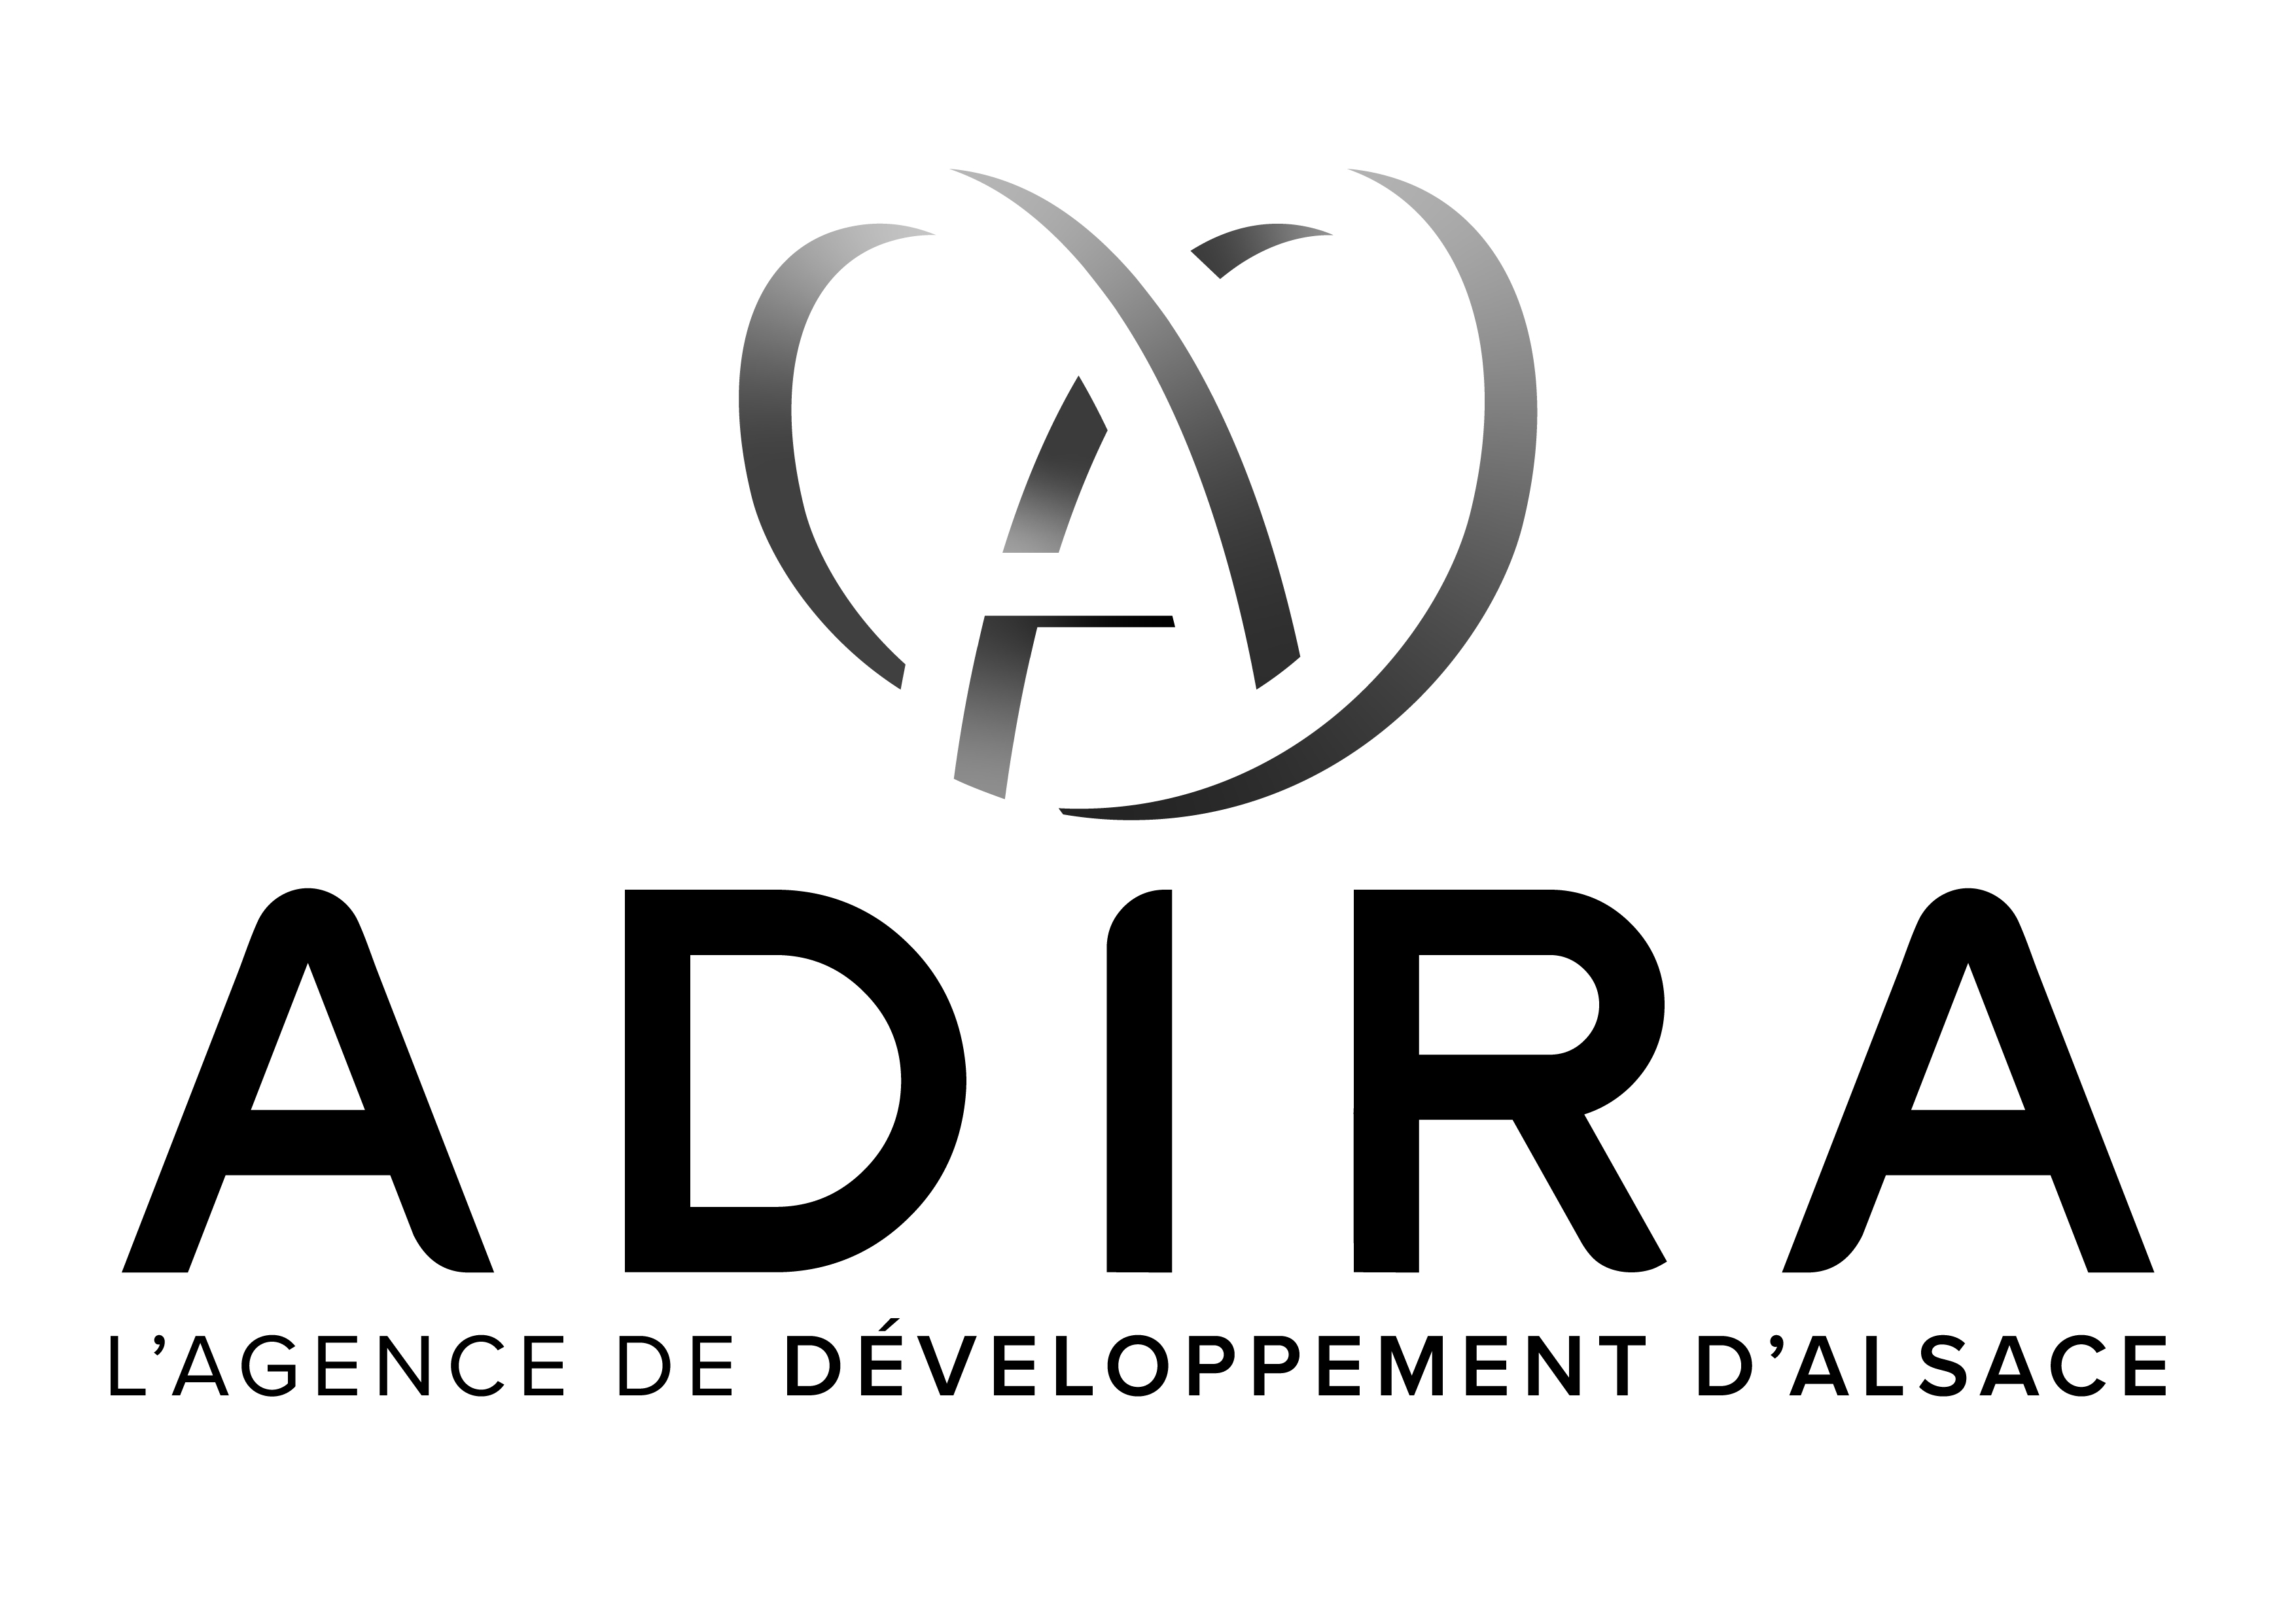 Agence de Développement d'Alsace - ADIRA